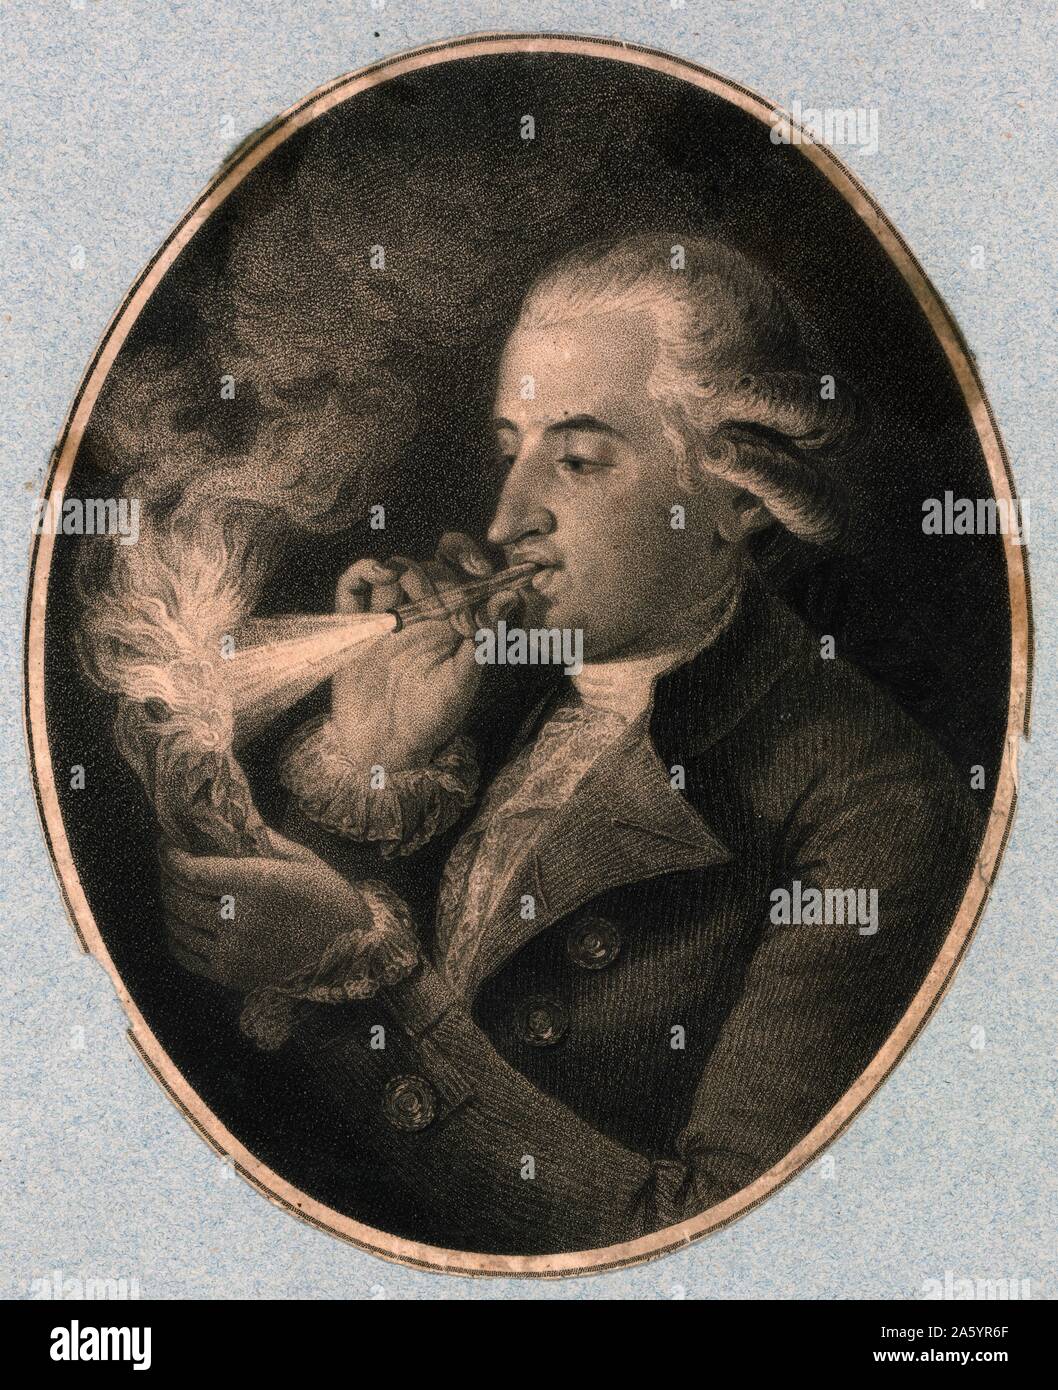 Portrait de Jean-François Pilâtre de Rozier (1754-1785) français de chimie et de physique, et l'un des pionniers de l'aviation. Datée 1820 Banque D'Images